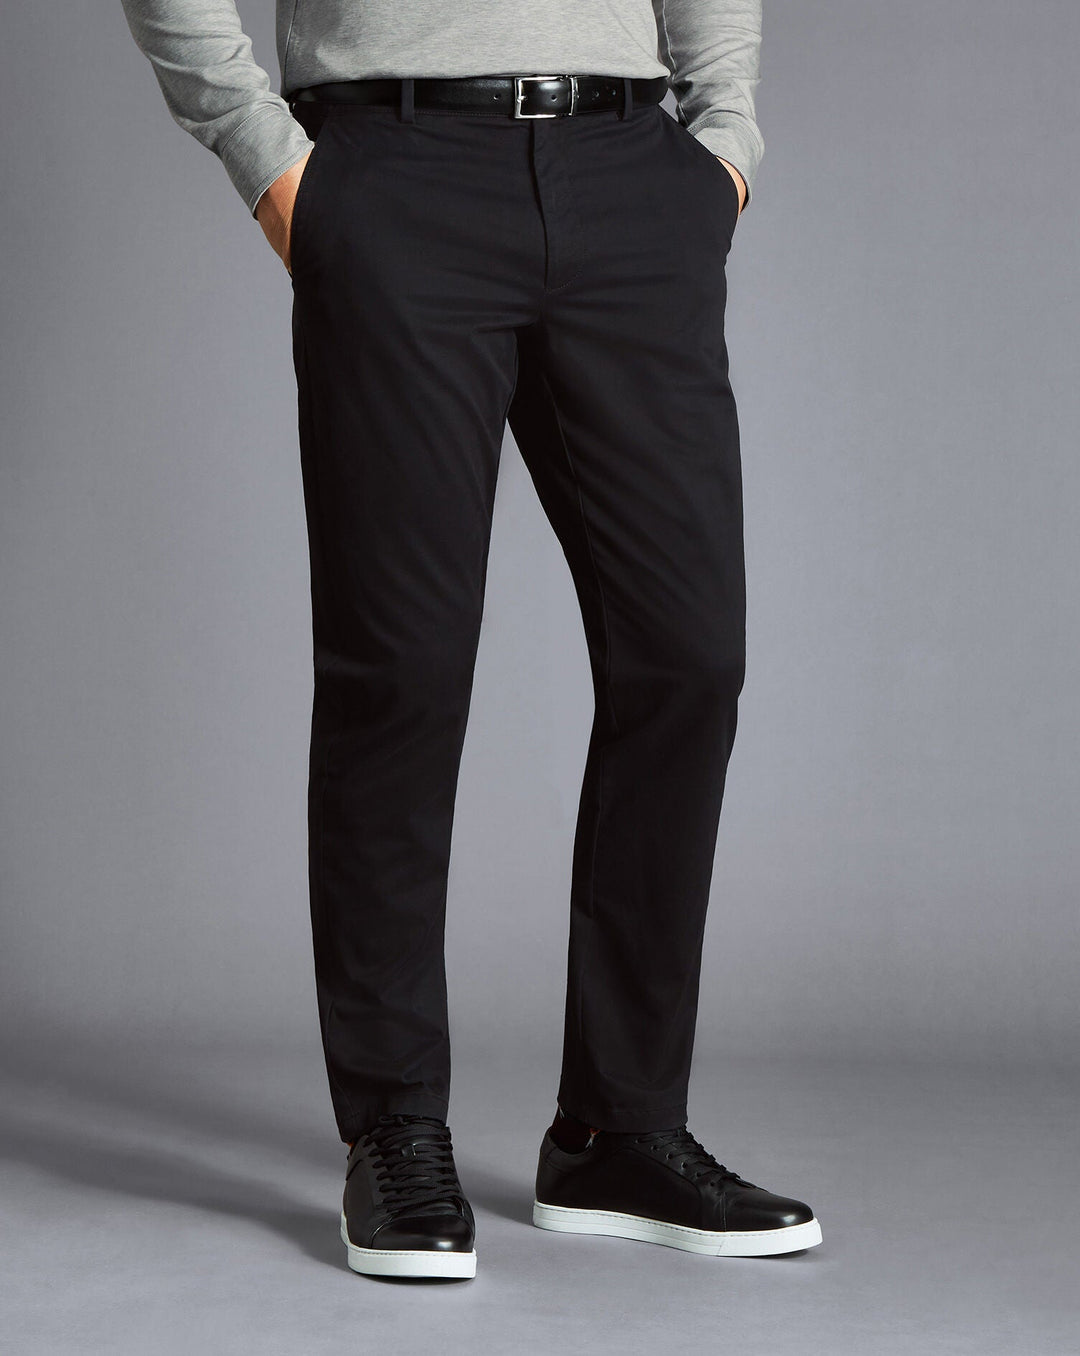 Charles Tyrwhitt Black Slim Fit Lightweight Trouser